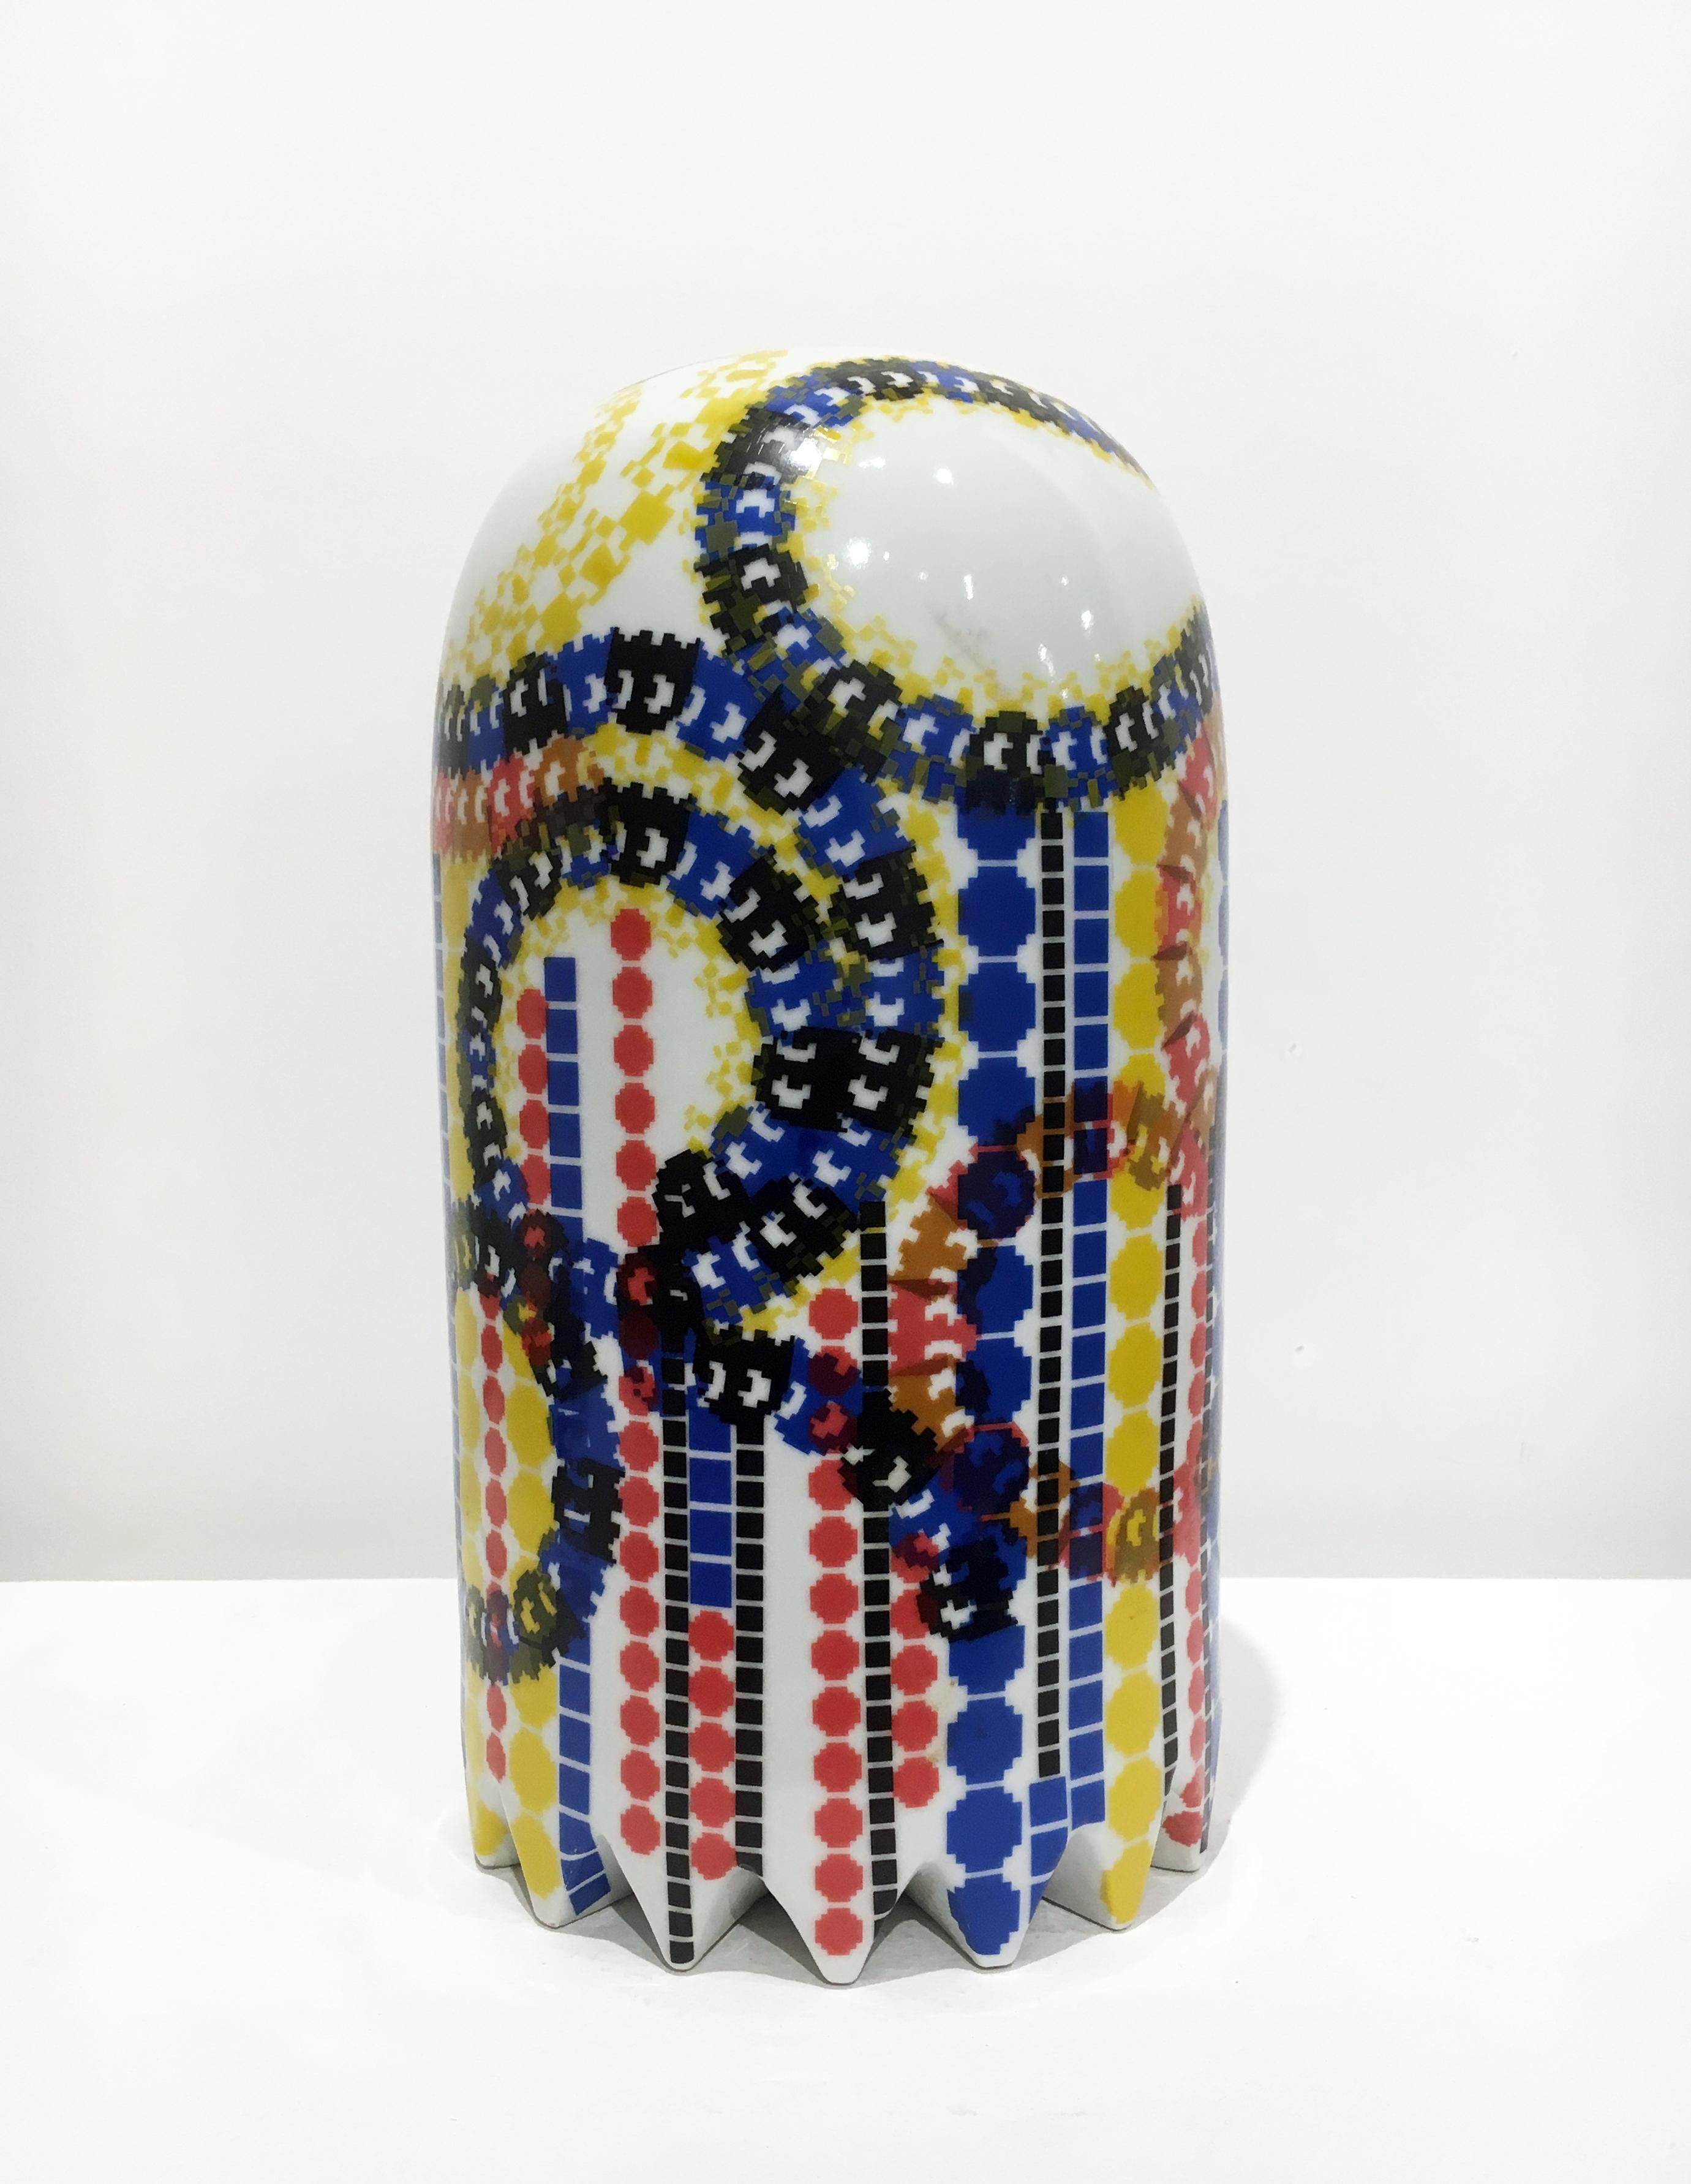 Zeitgenössische Keramik-Skulptur in Großformat mit bunten Deckeln, Porzellan  – Sculpture von Jesse Small